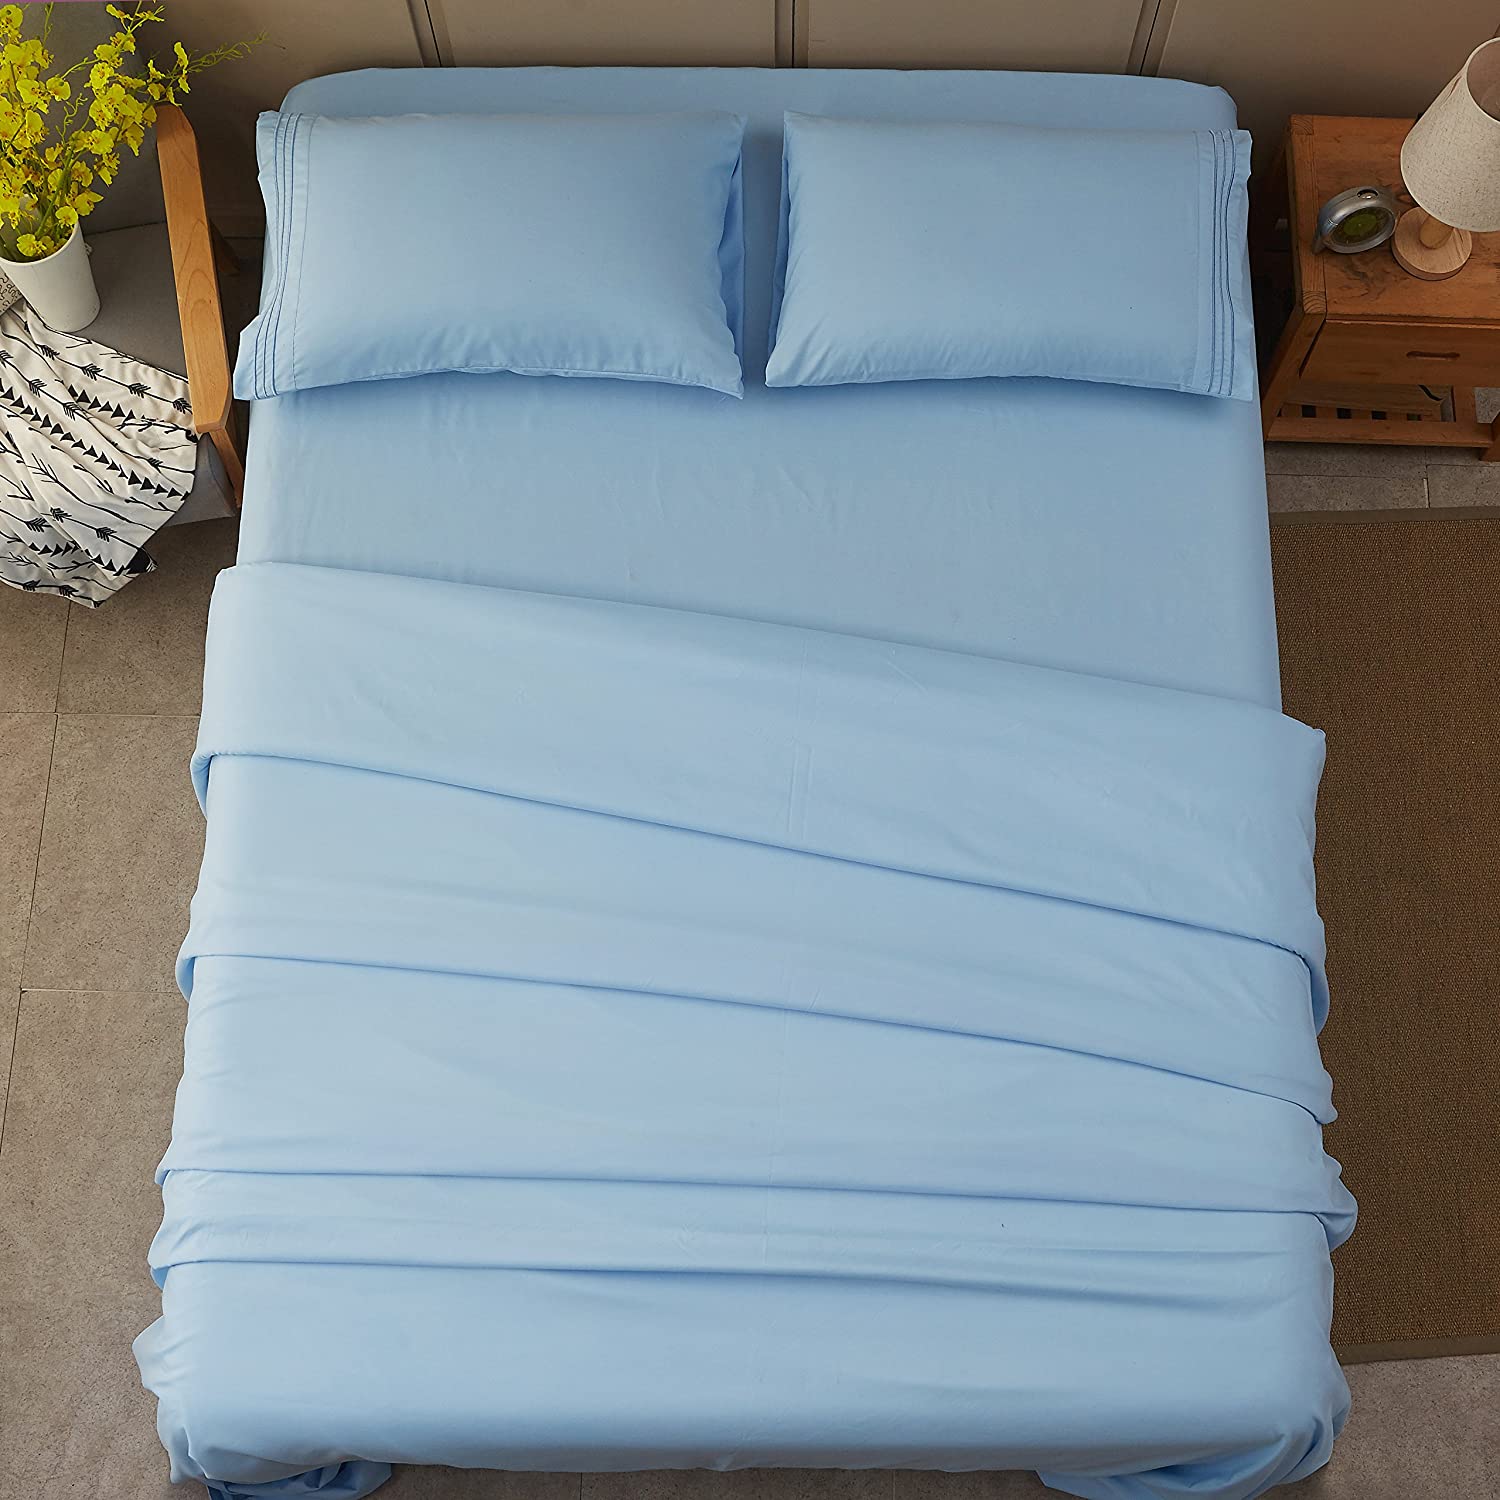 Sky Blue - Plain Solid Color Bed Sheet Set